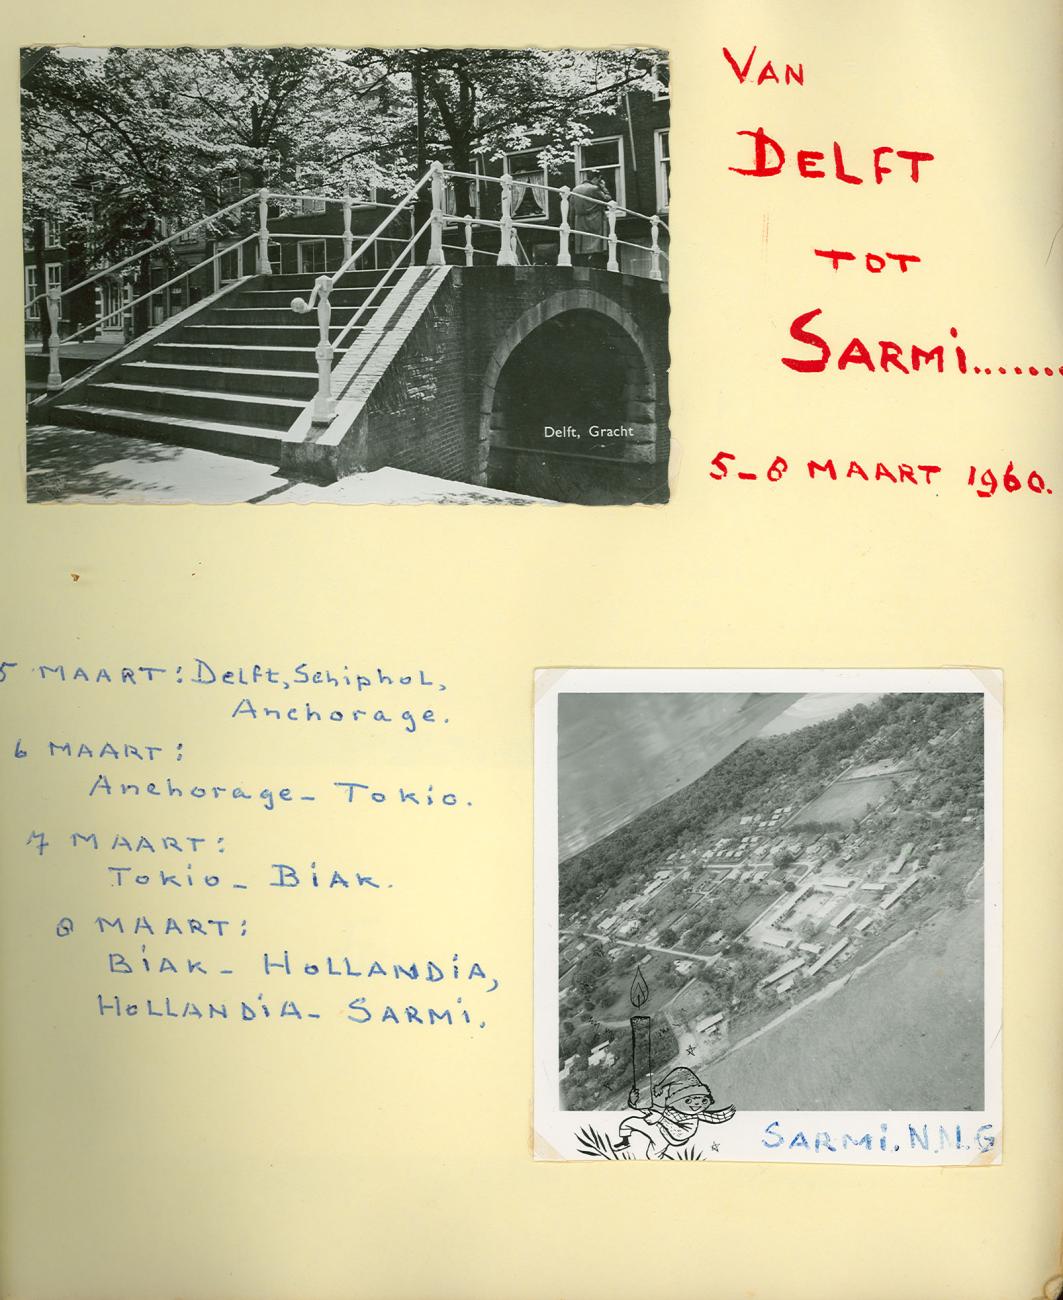 BD/83/1 - 
Sarmi gezien vanuit de lucht
